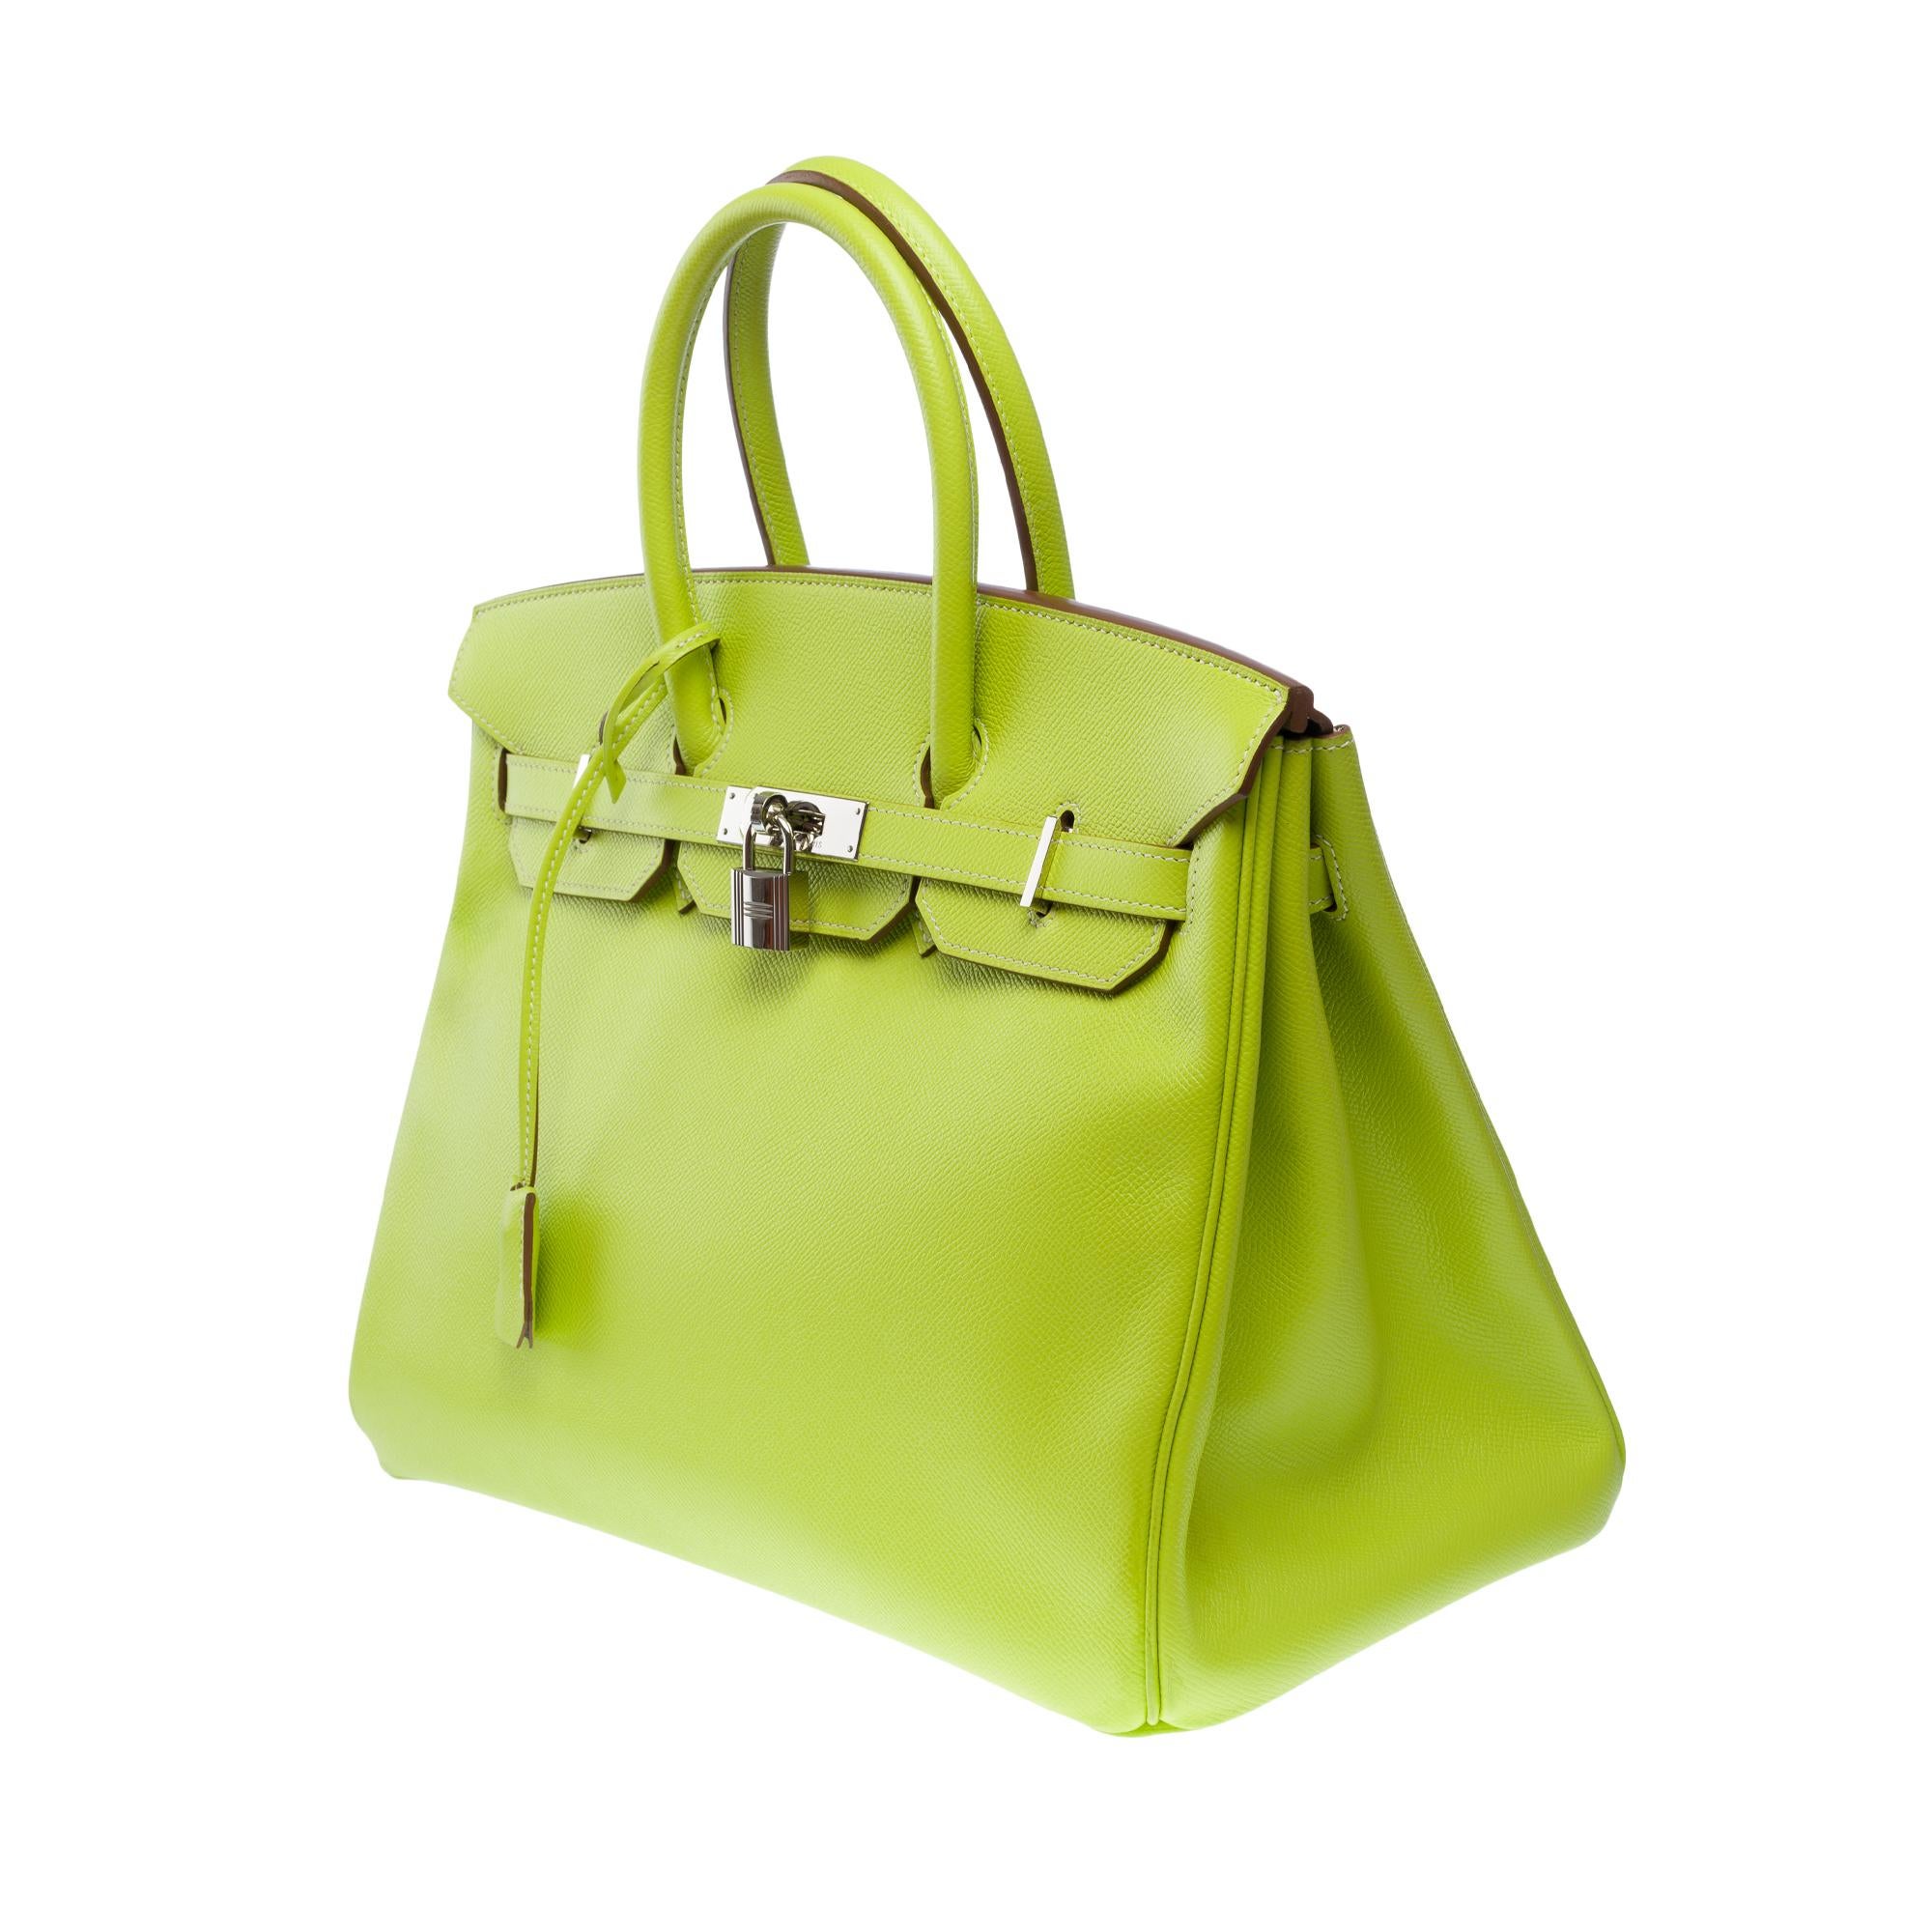 Candy limited edition Hermès Birkin 35 handbag in Kiwi Green epsom leather, SHW 1